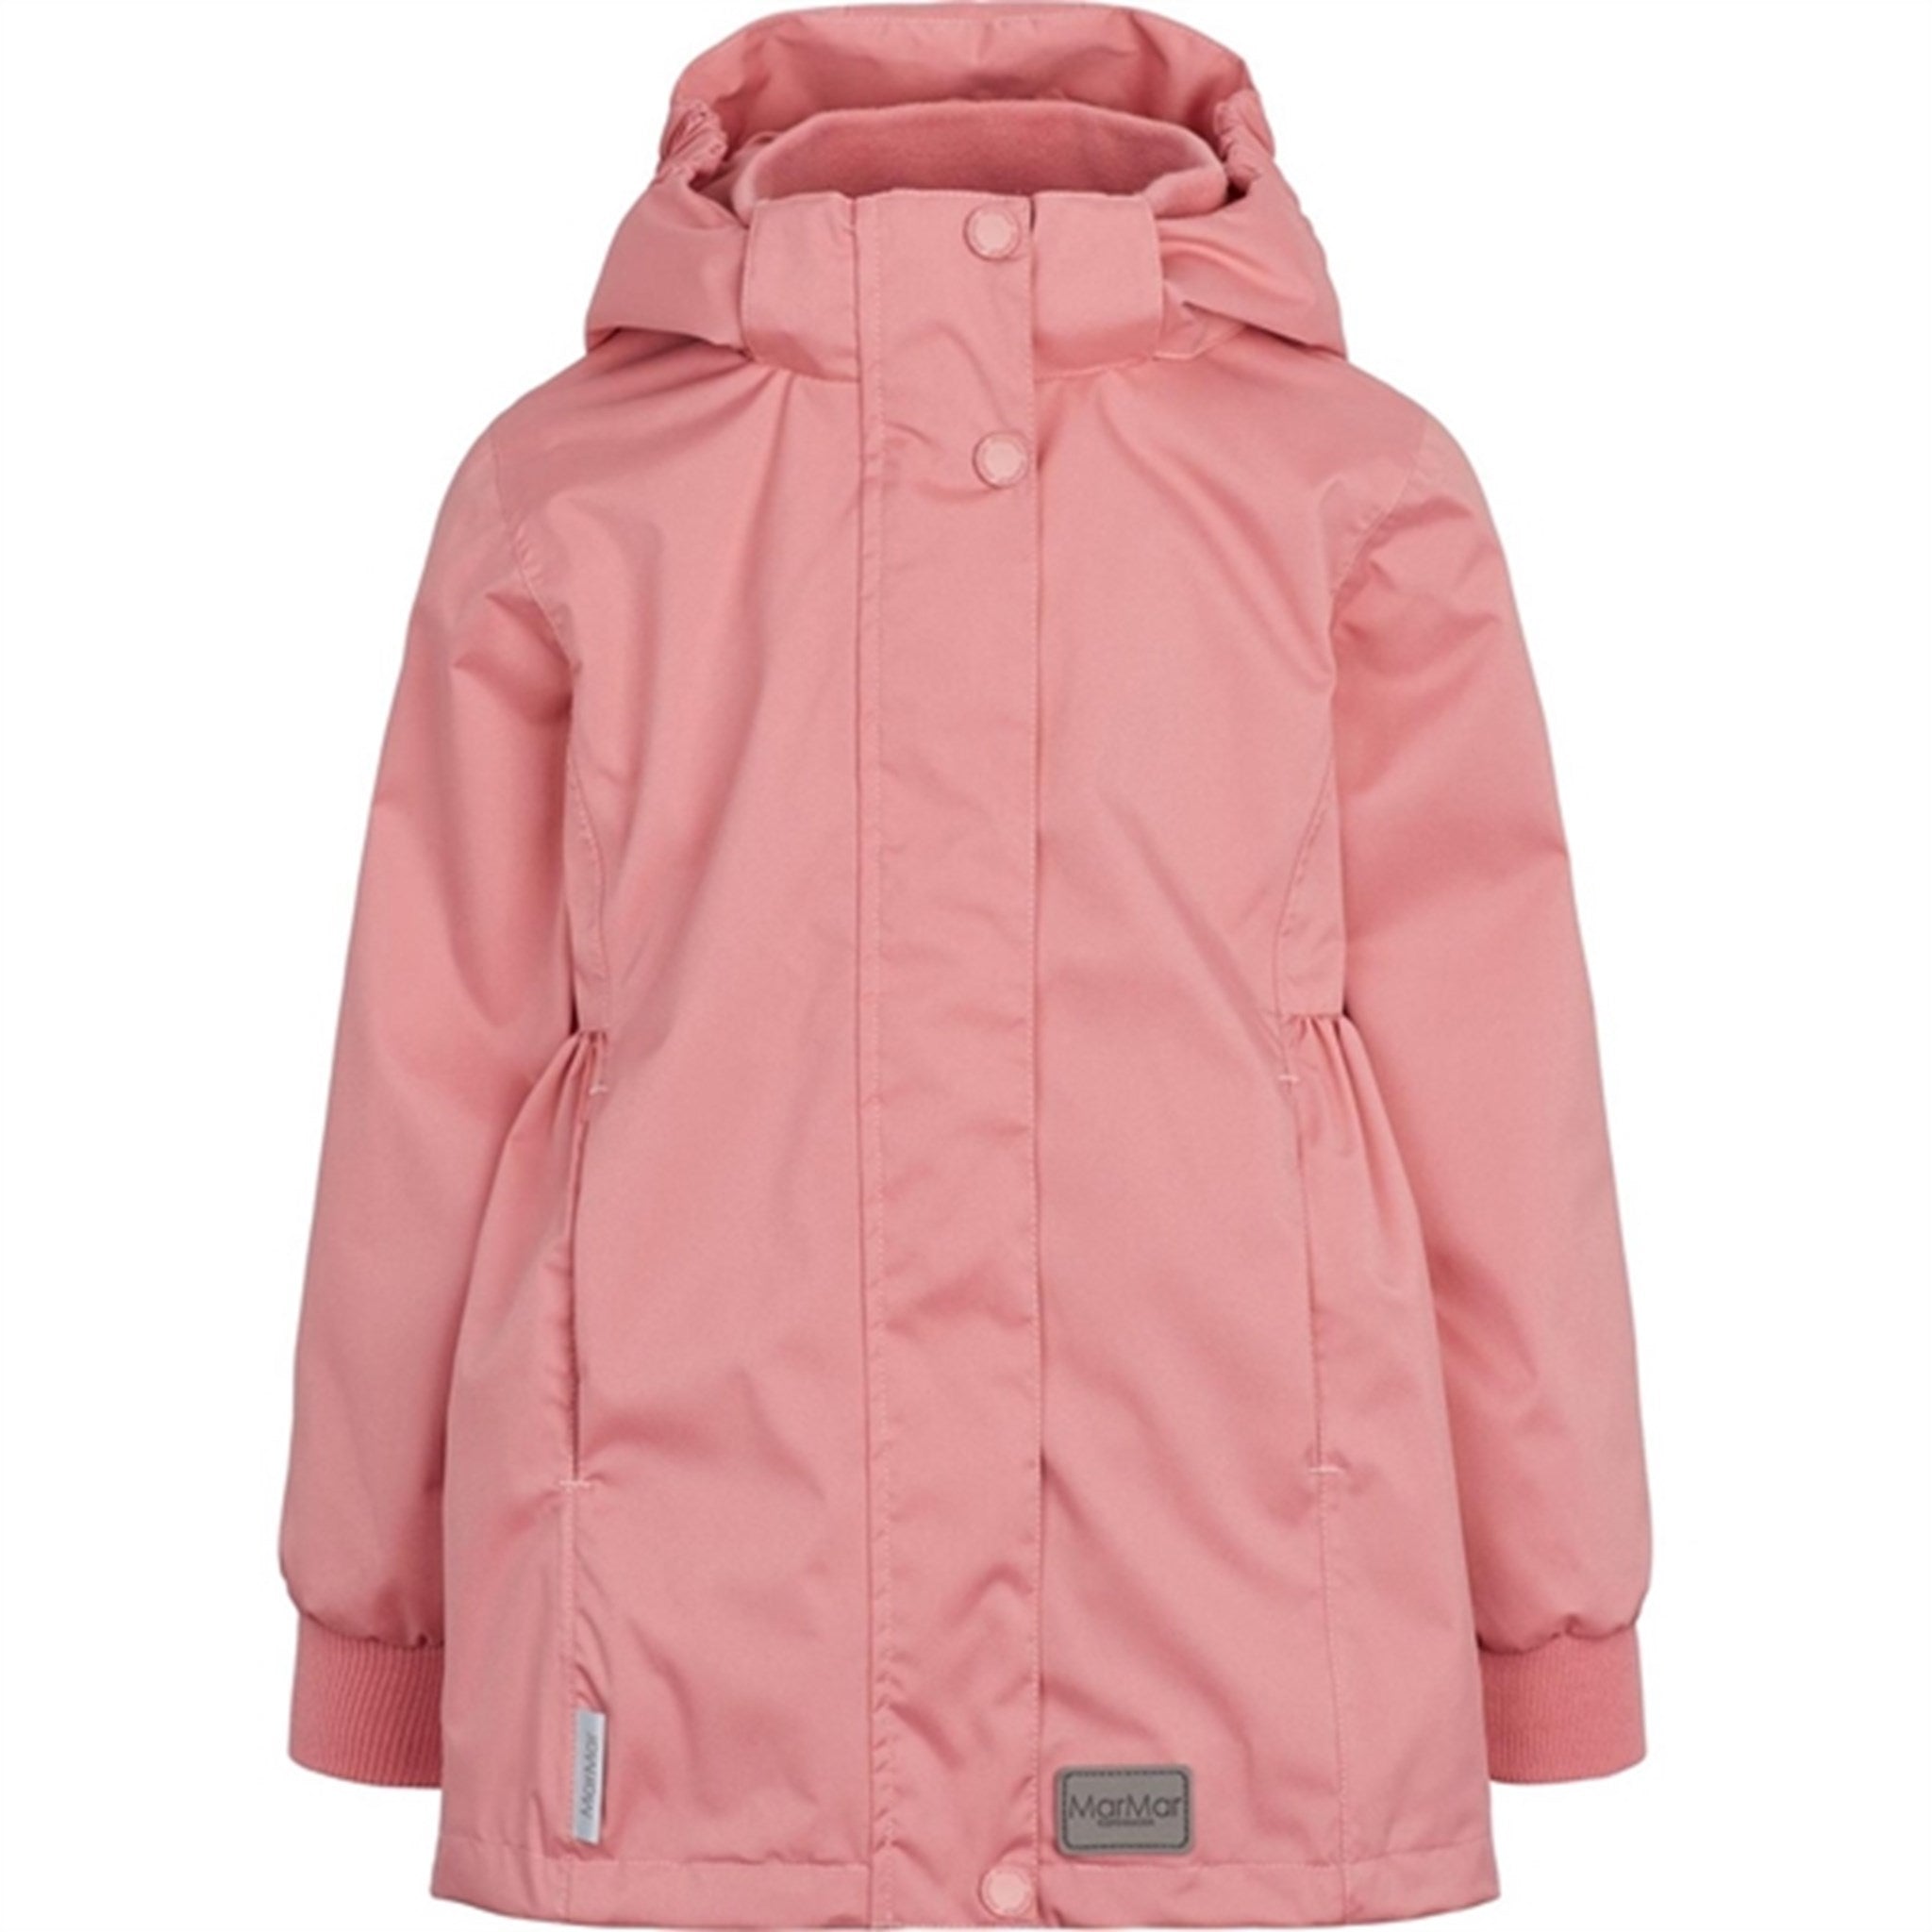 MarMar Jakke Oda Pink Delight Technical Summer Outerwear